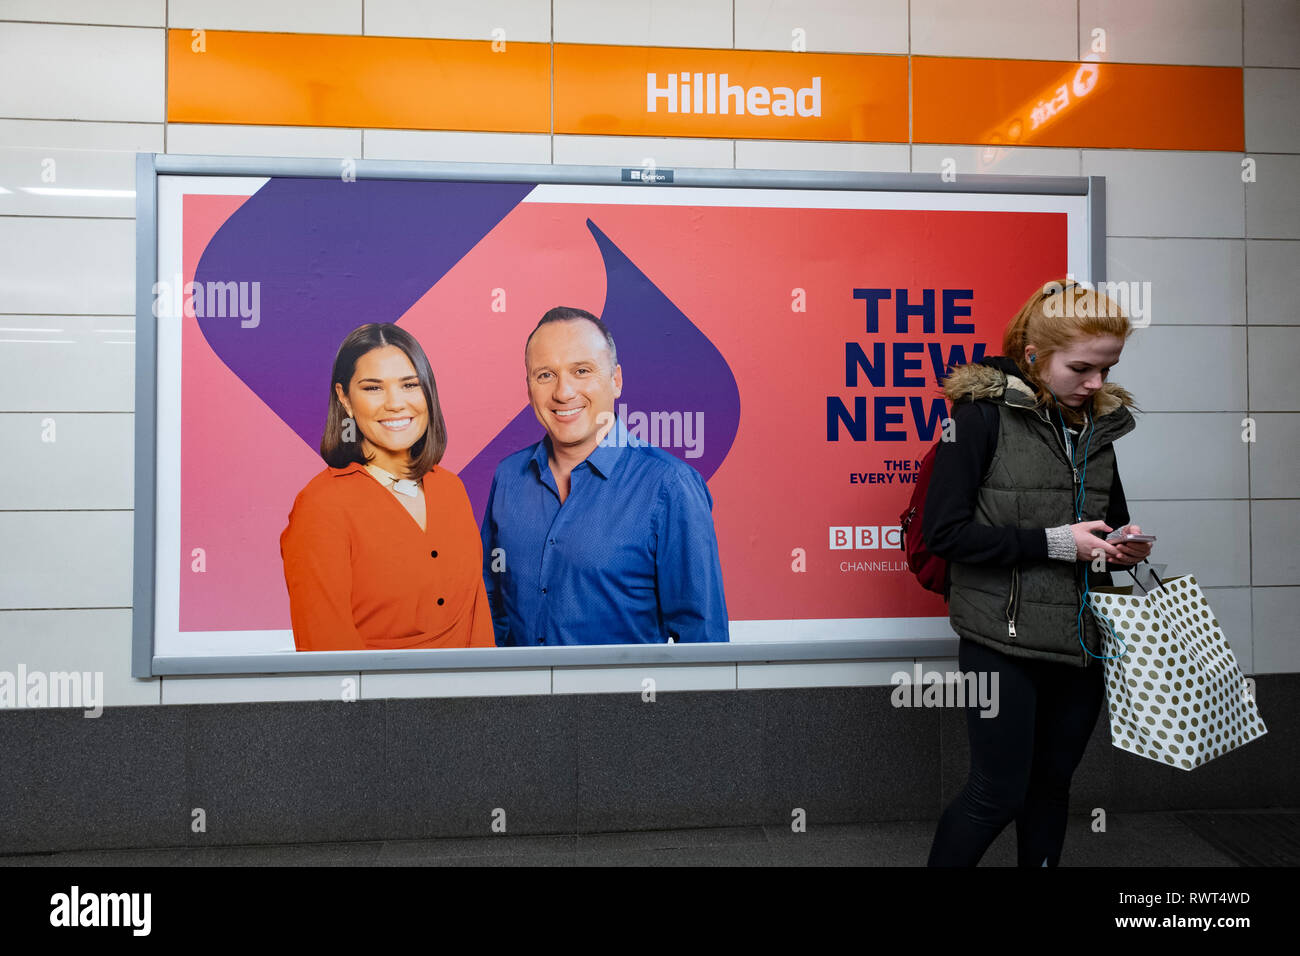 La pubblicità tramite Affissioni nuova BBC Scotland canale TV evening news visualizza il nove e presentatori Rebecca Curran e Martin Geissler, all'interno della stazione sul Foto Stock